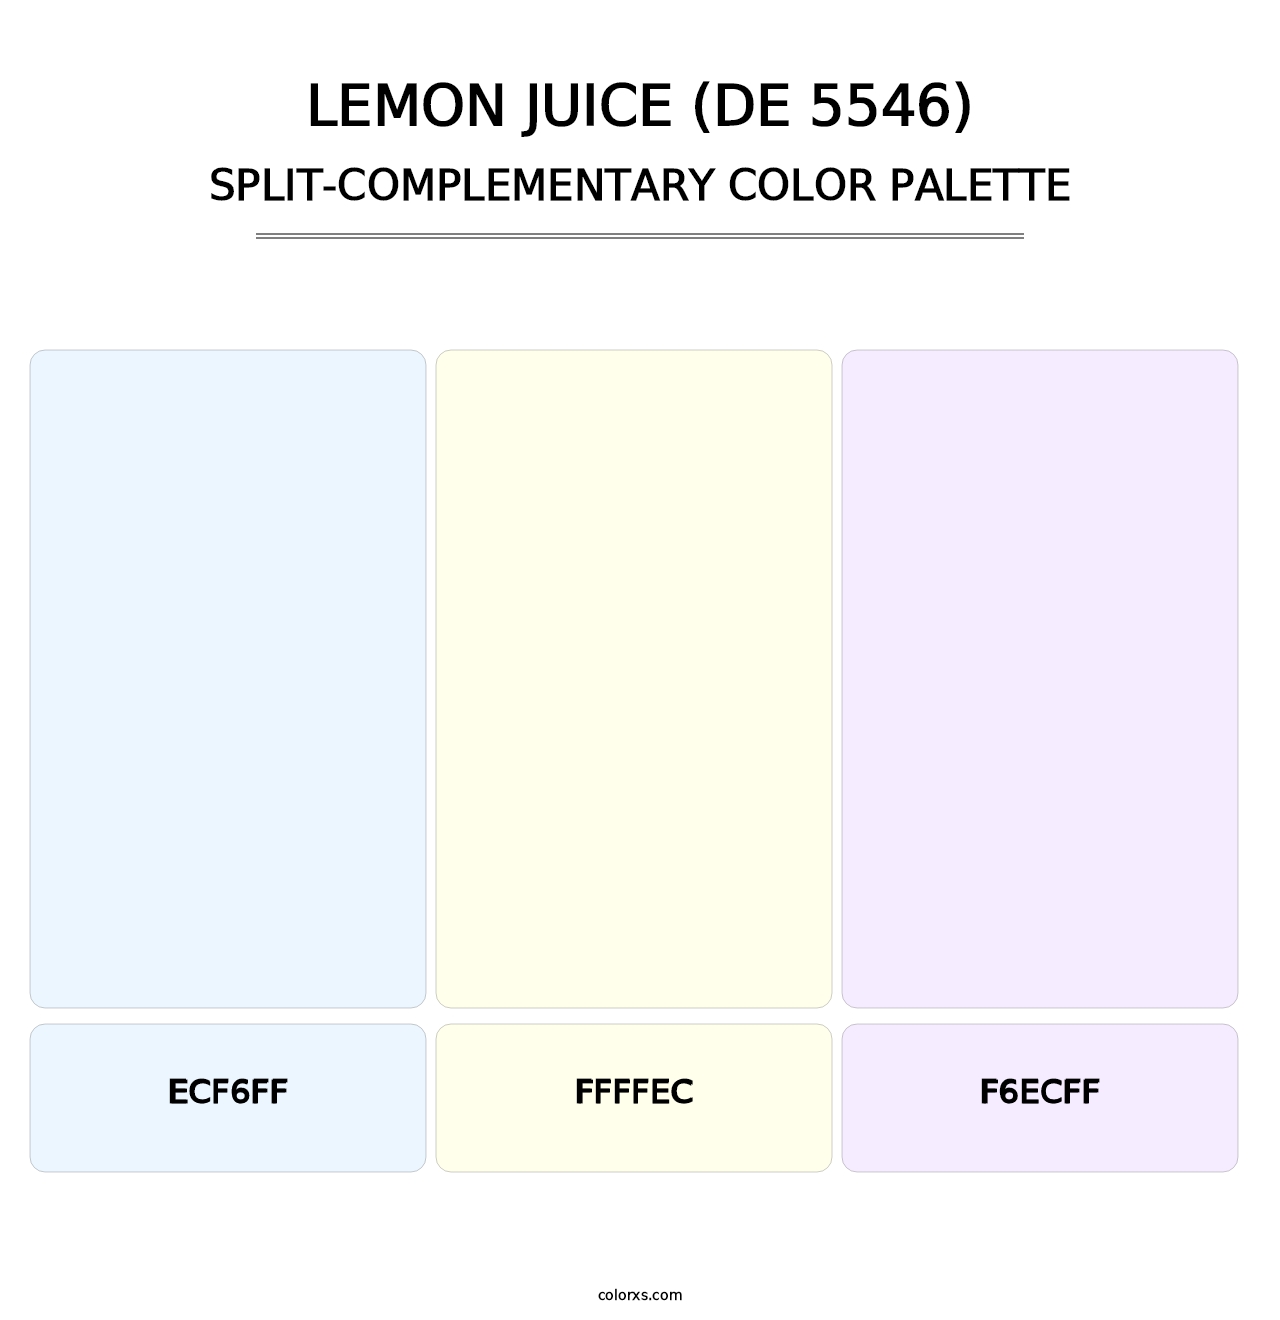 Lemon Juice (DE 5546) - Split-Complementary Color Palette